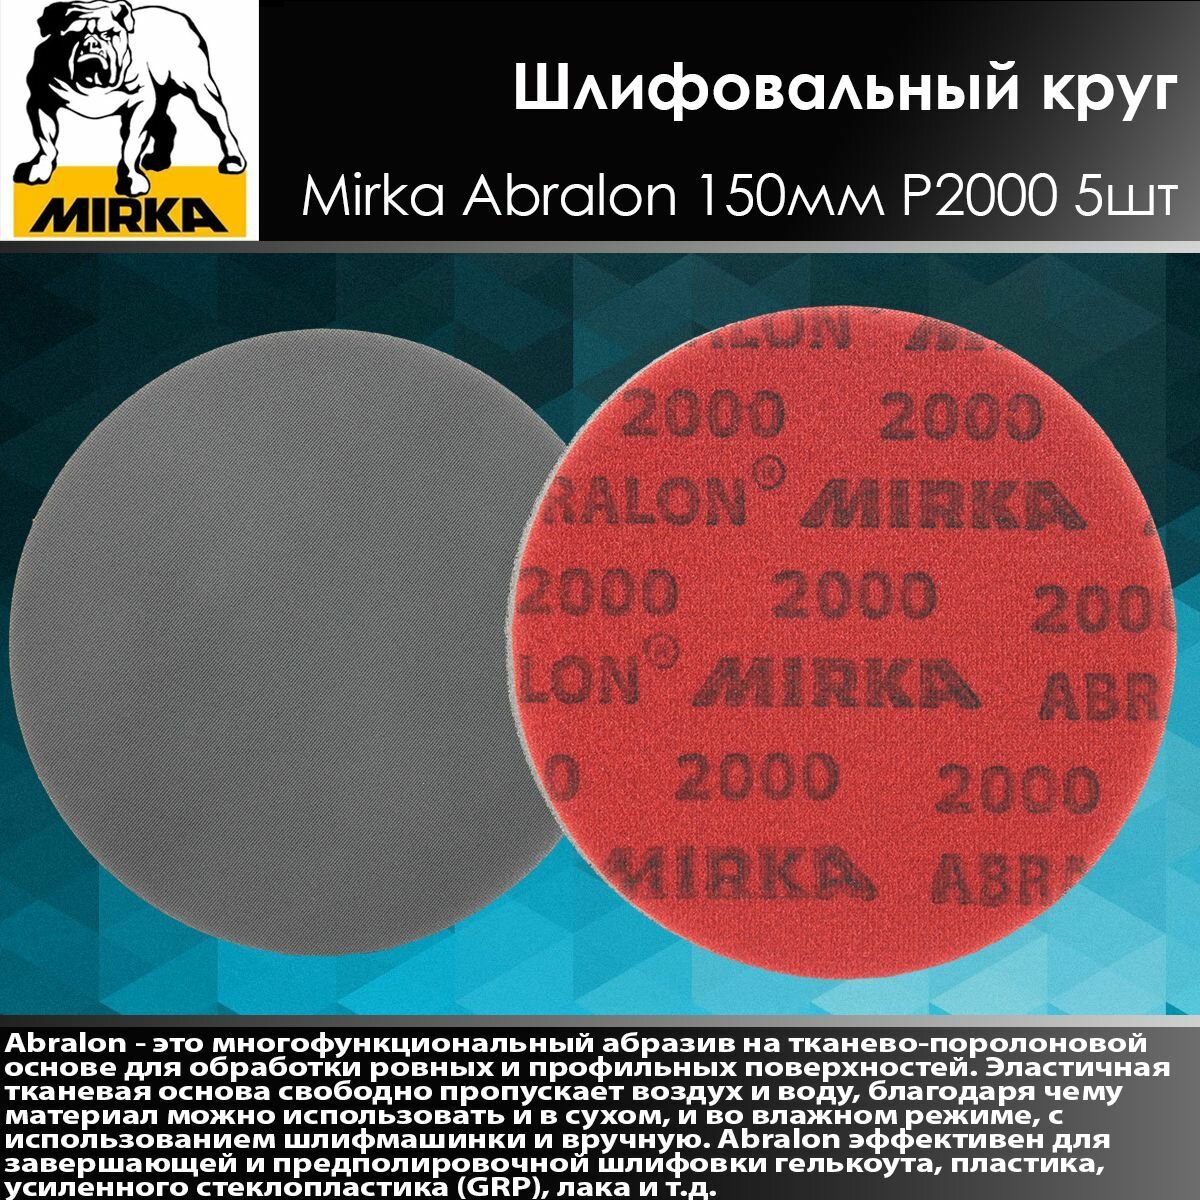 Шлифовальный круг Mirka Abralon Р2000 150мм 5шт